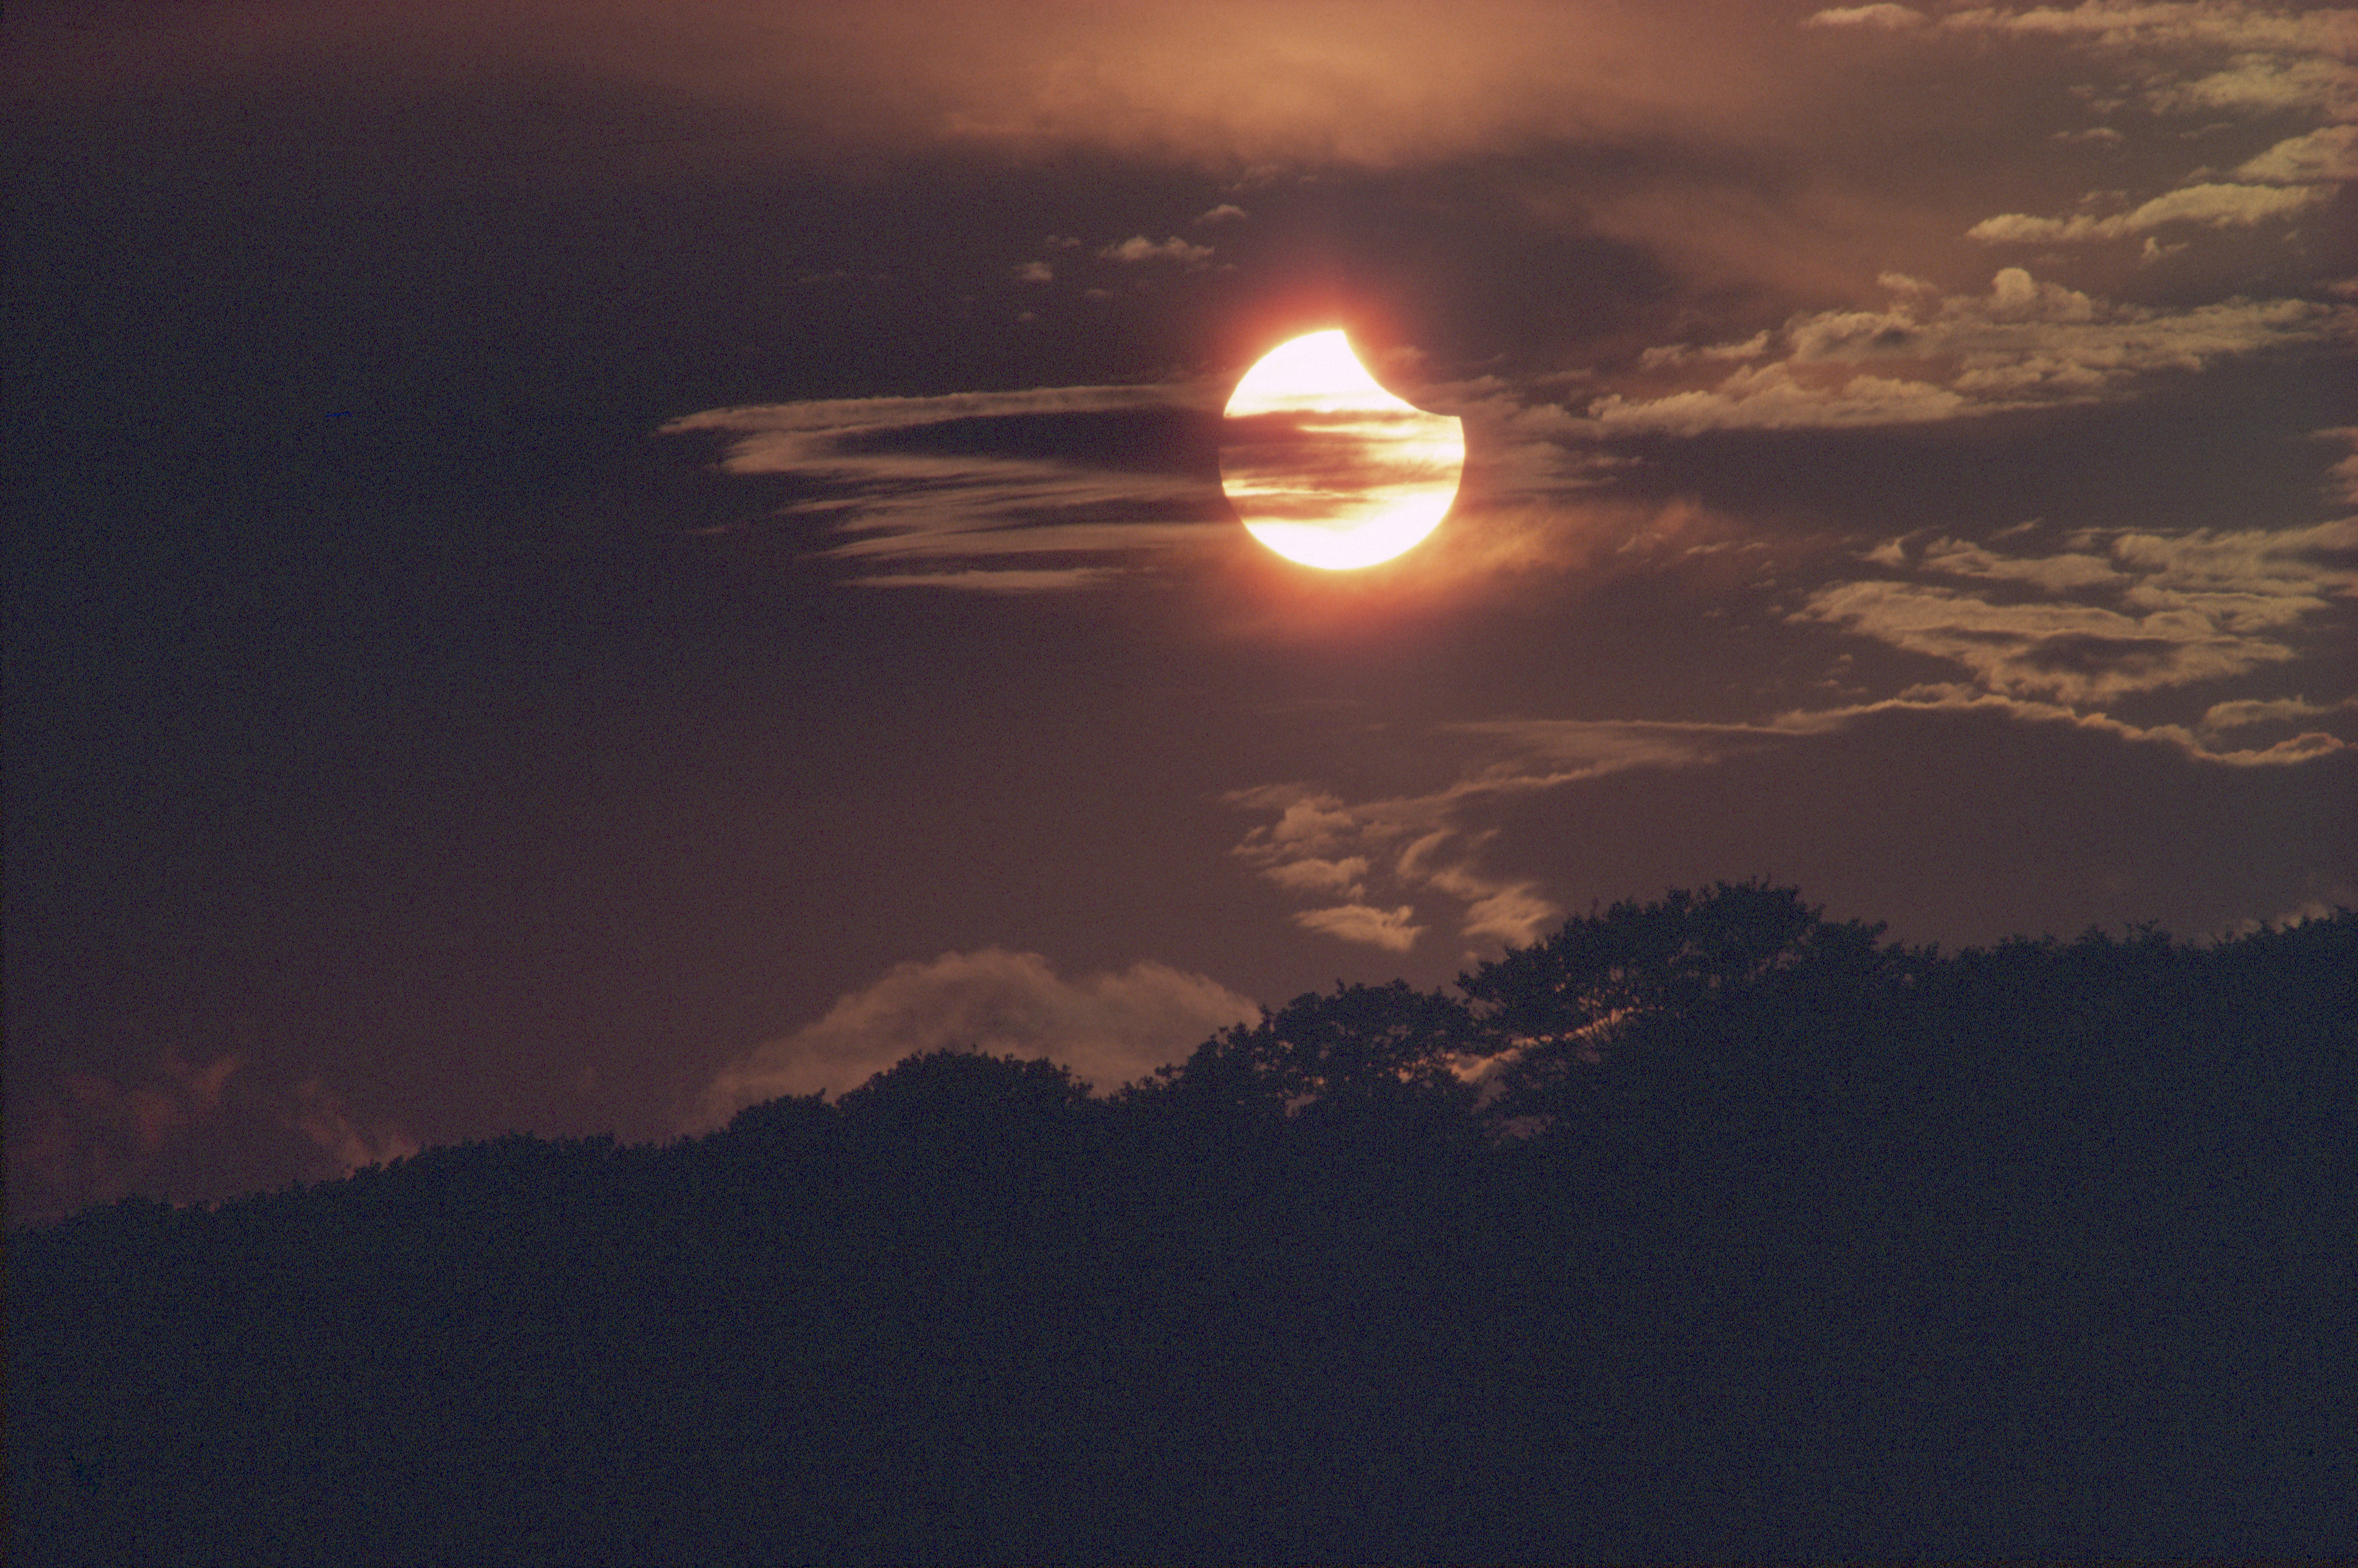 Eclipse solar parcial, 20 de julio de 1982. Capturado por Harefield en el Reino Unido.